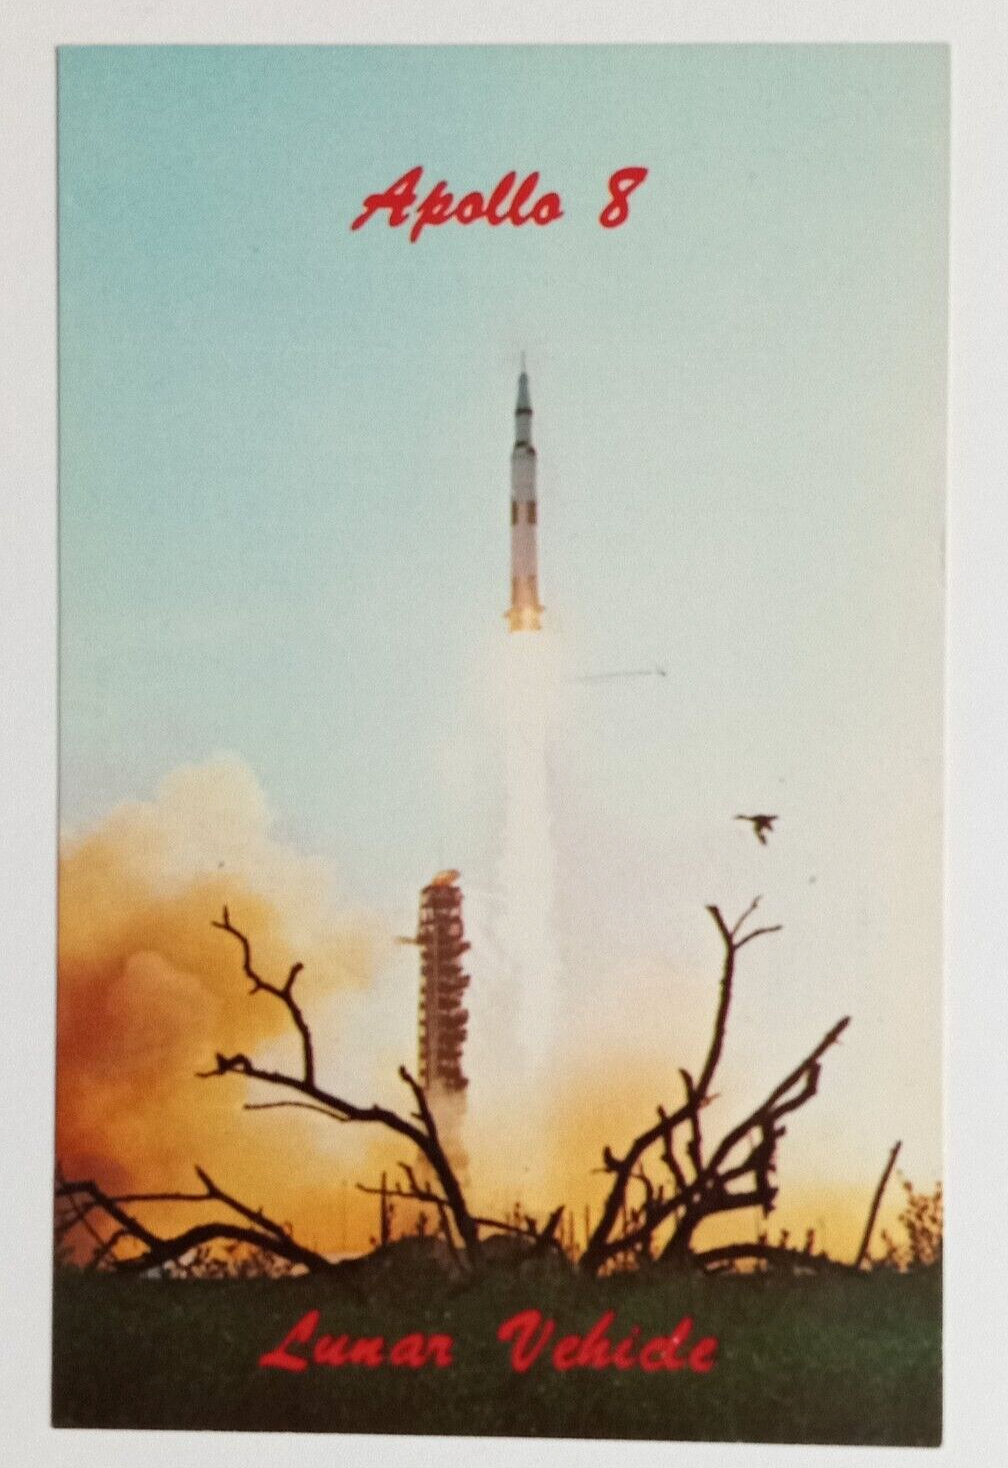 Apollo 8 Lunar Vehicle Kennedy Space Center NASA FL Koppel UNP Postcard c1970s - $4.99